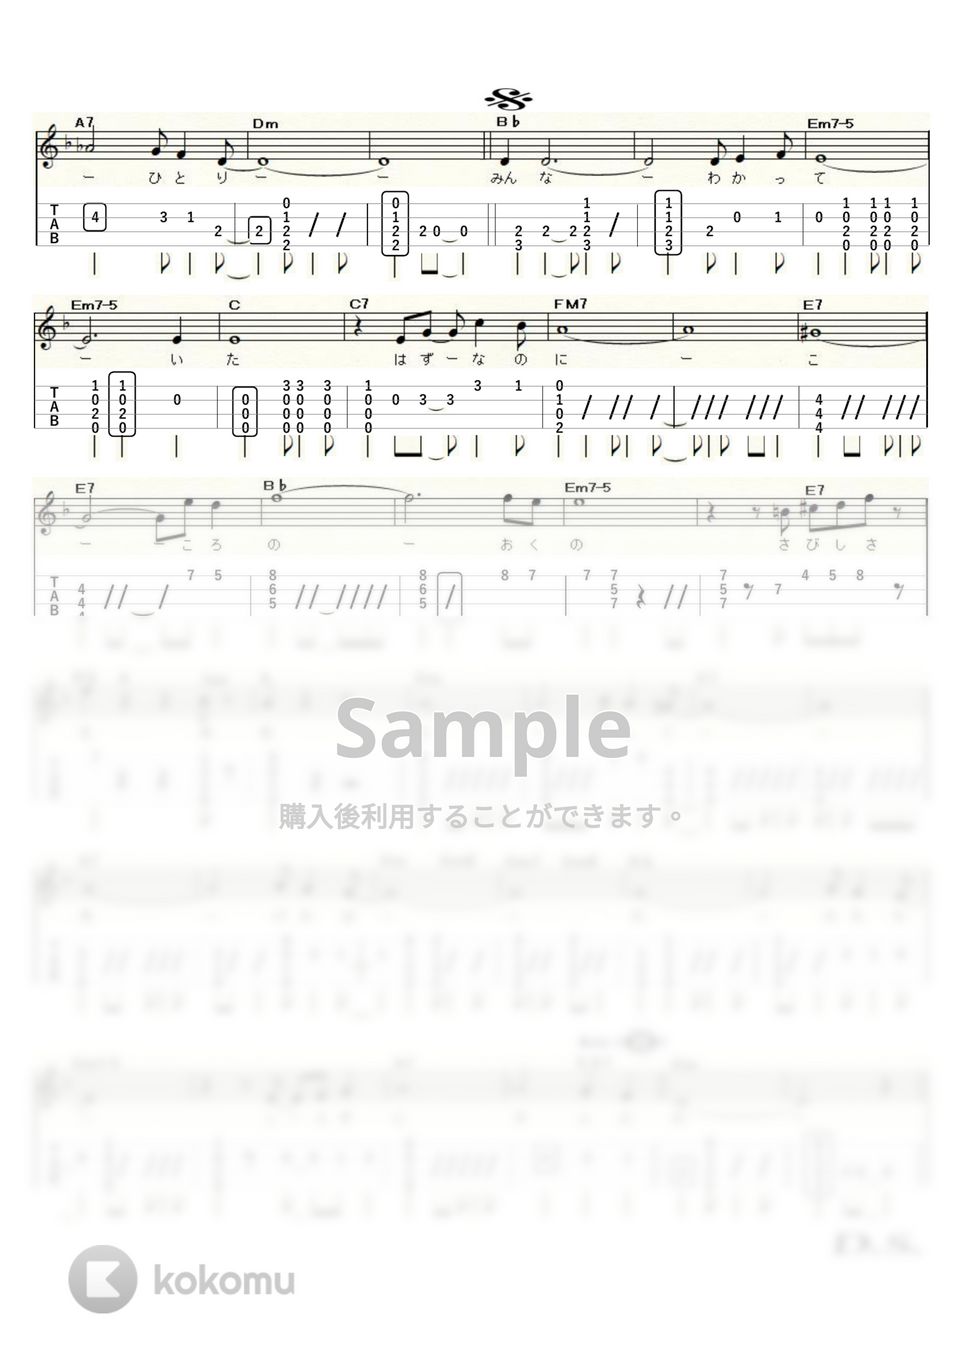 長谷川きよし - 別れのサンバ (High-G,Low-G) by ukulelepapa